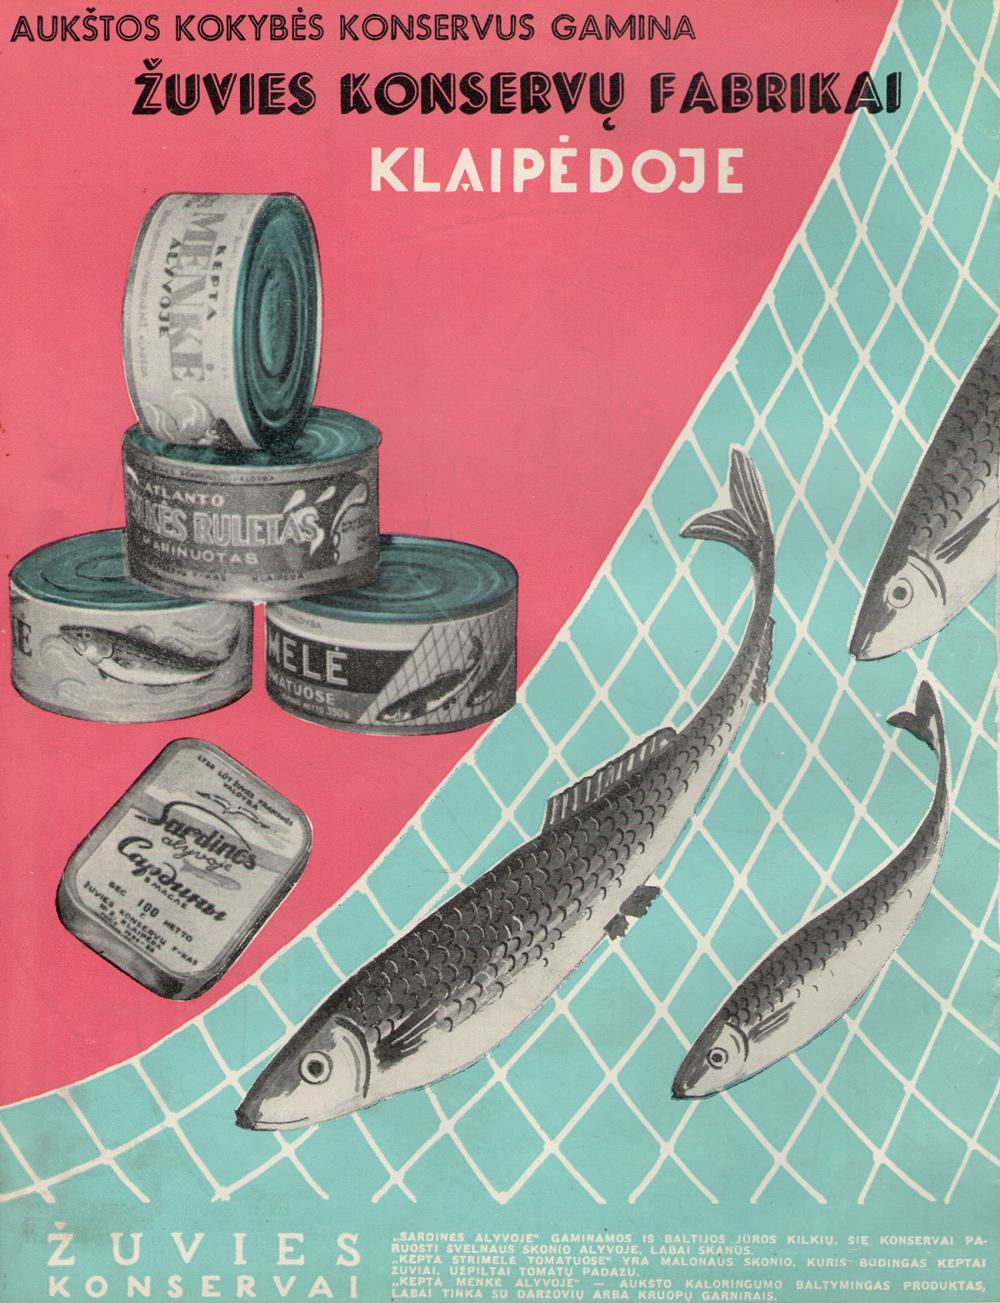 Aukštos kokybės konservus gamina žuvies konservų fabrikai Klaipėdoje